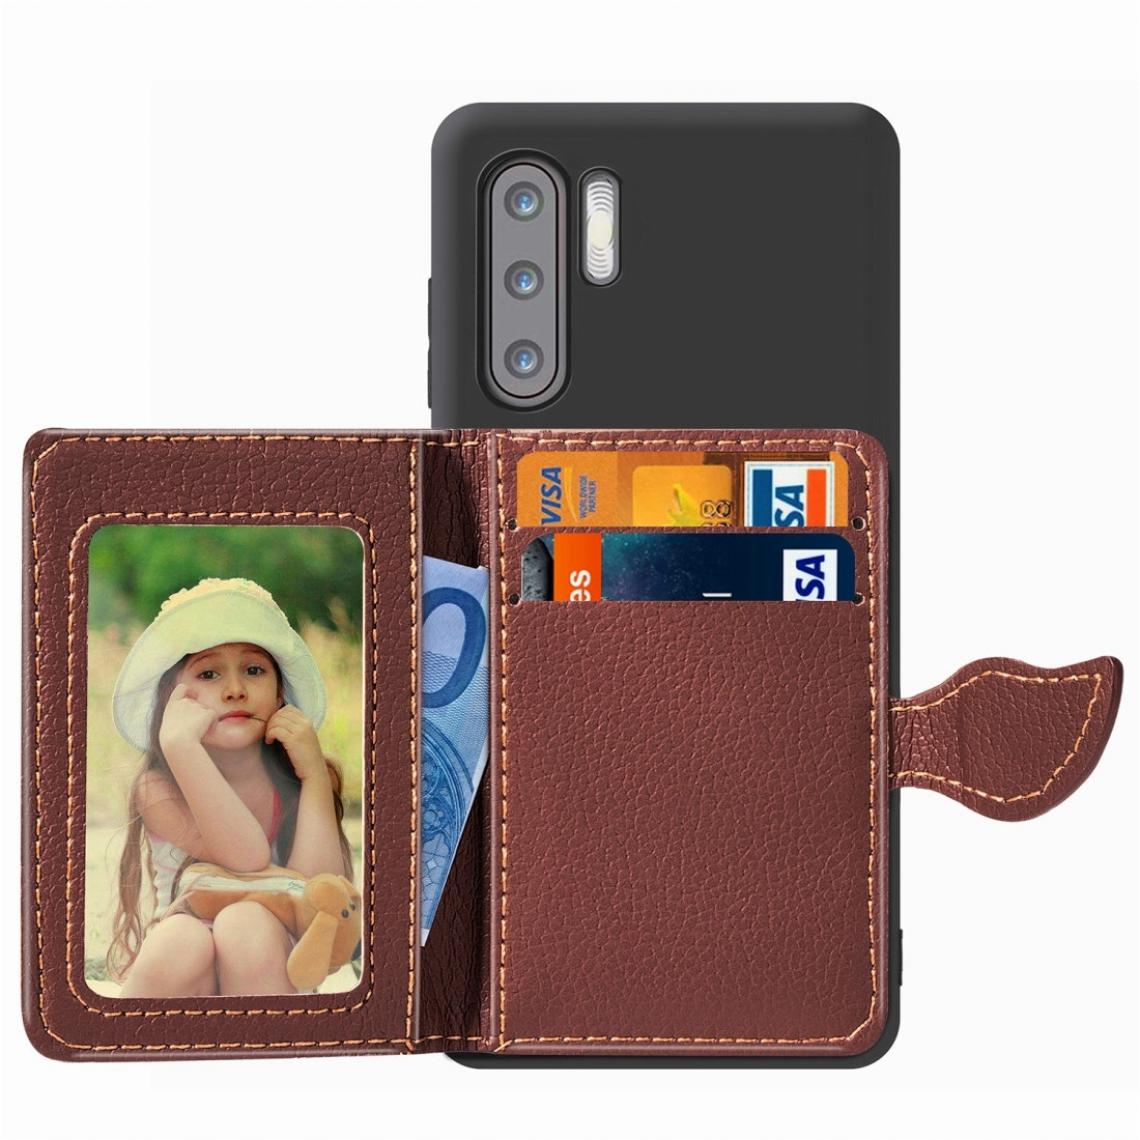 Wewoo - Housse Étui Coque Porte-cartes Texture Boucle Feuille Litchi Etui PU + TPU pour Huawei P30 Proavec fente cartes & porte-monnaie & porte-cadre / cadre photo - Coque, étui smartphone